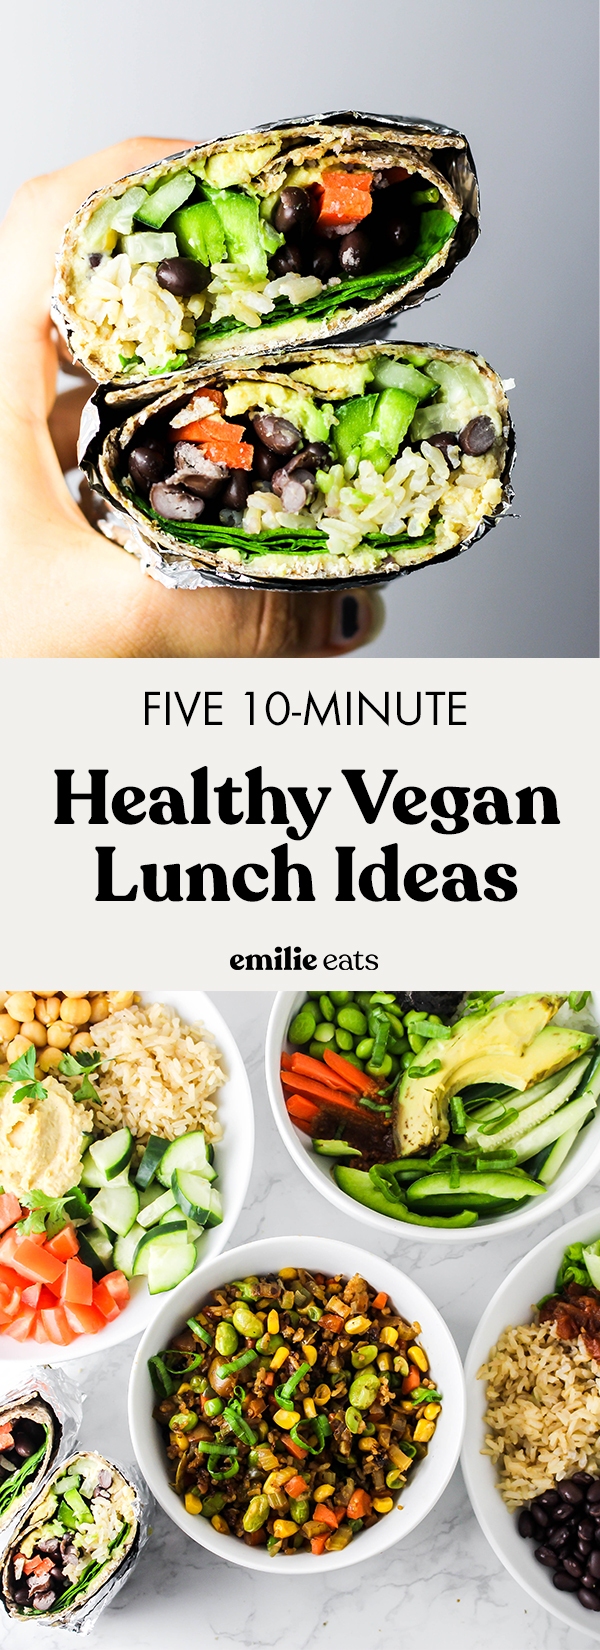 5 Healthy Vegan Lunch Ideas – Emilie Eats